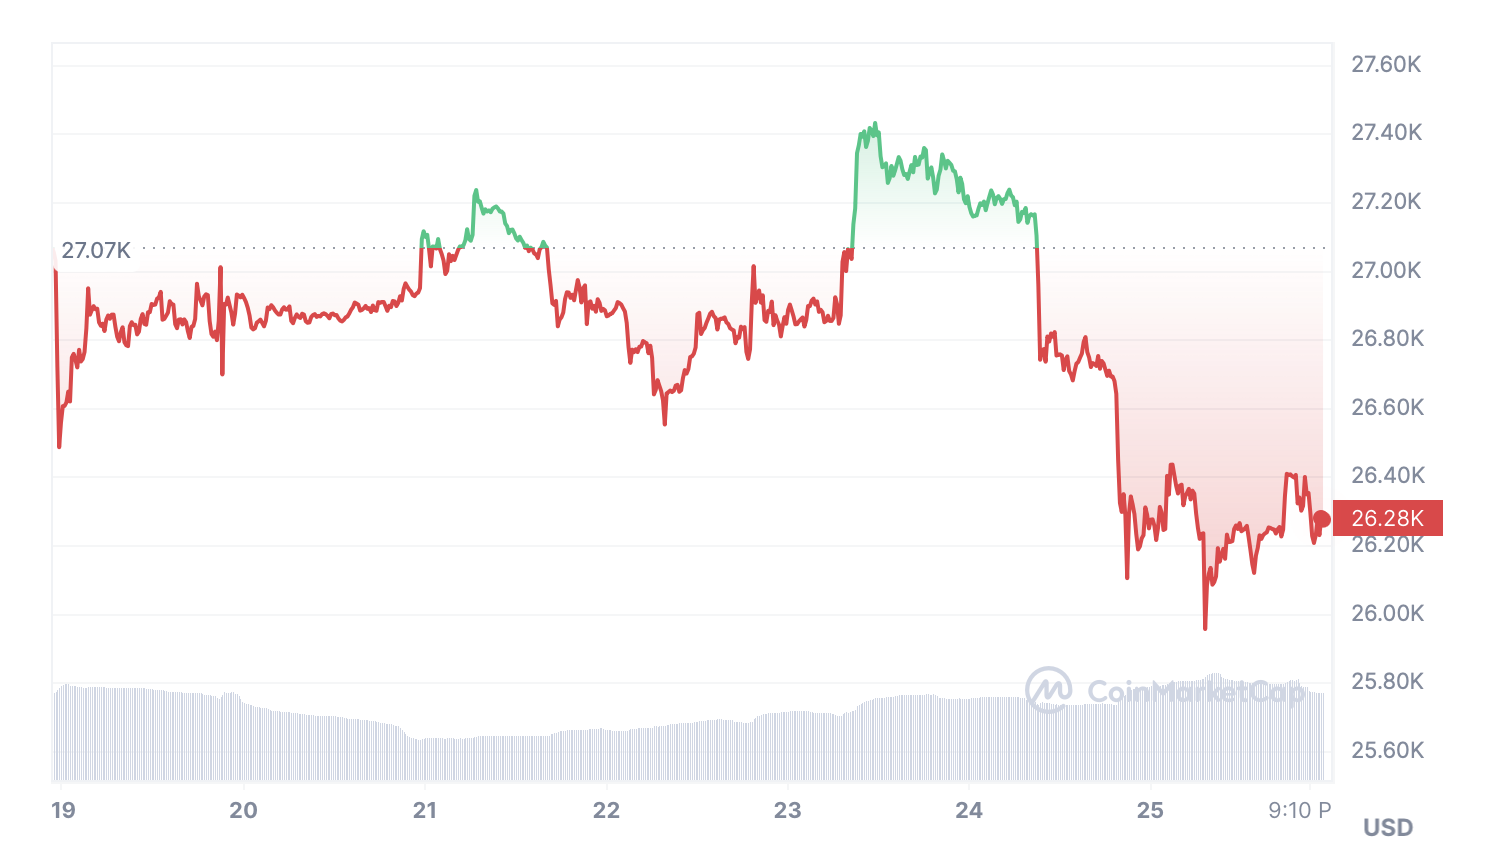 Bitcoin Chart